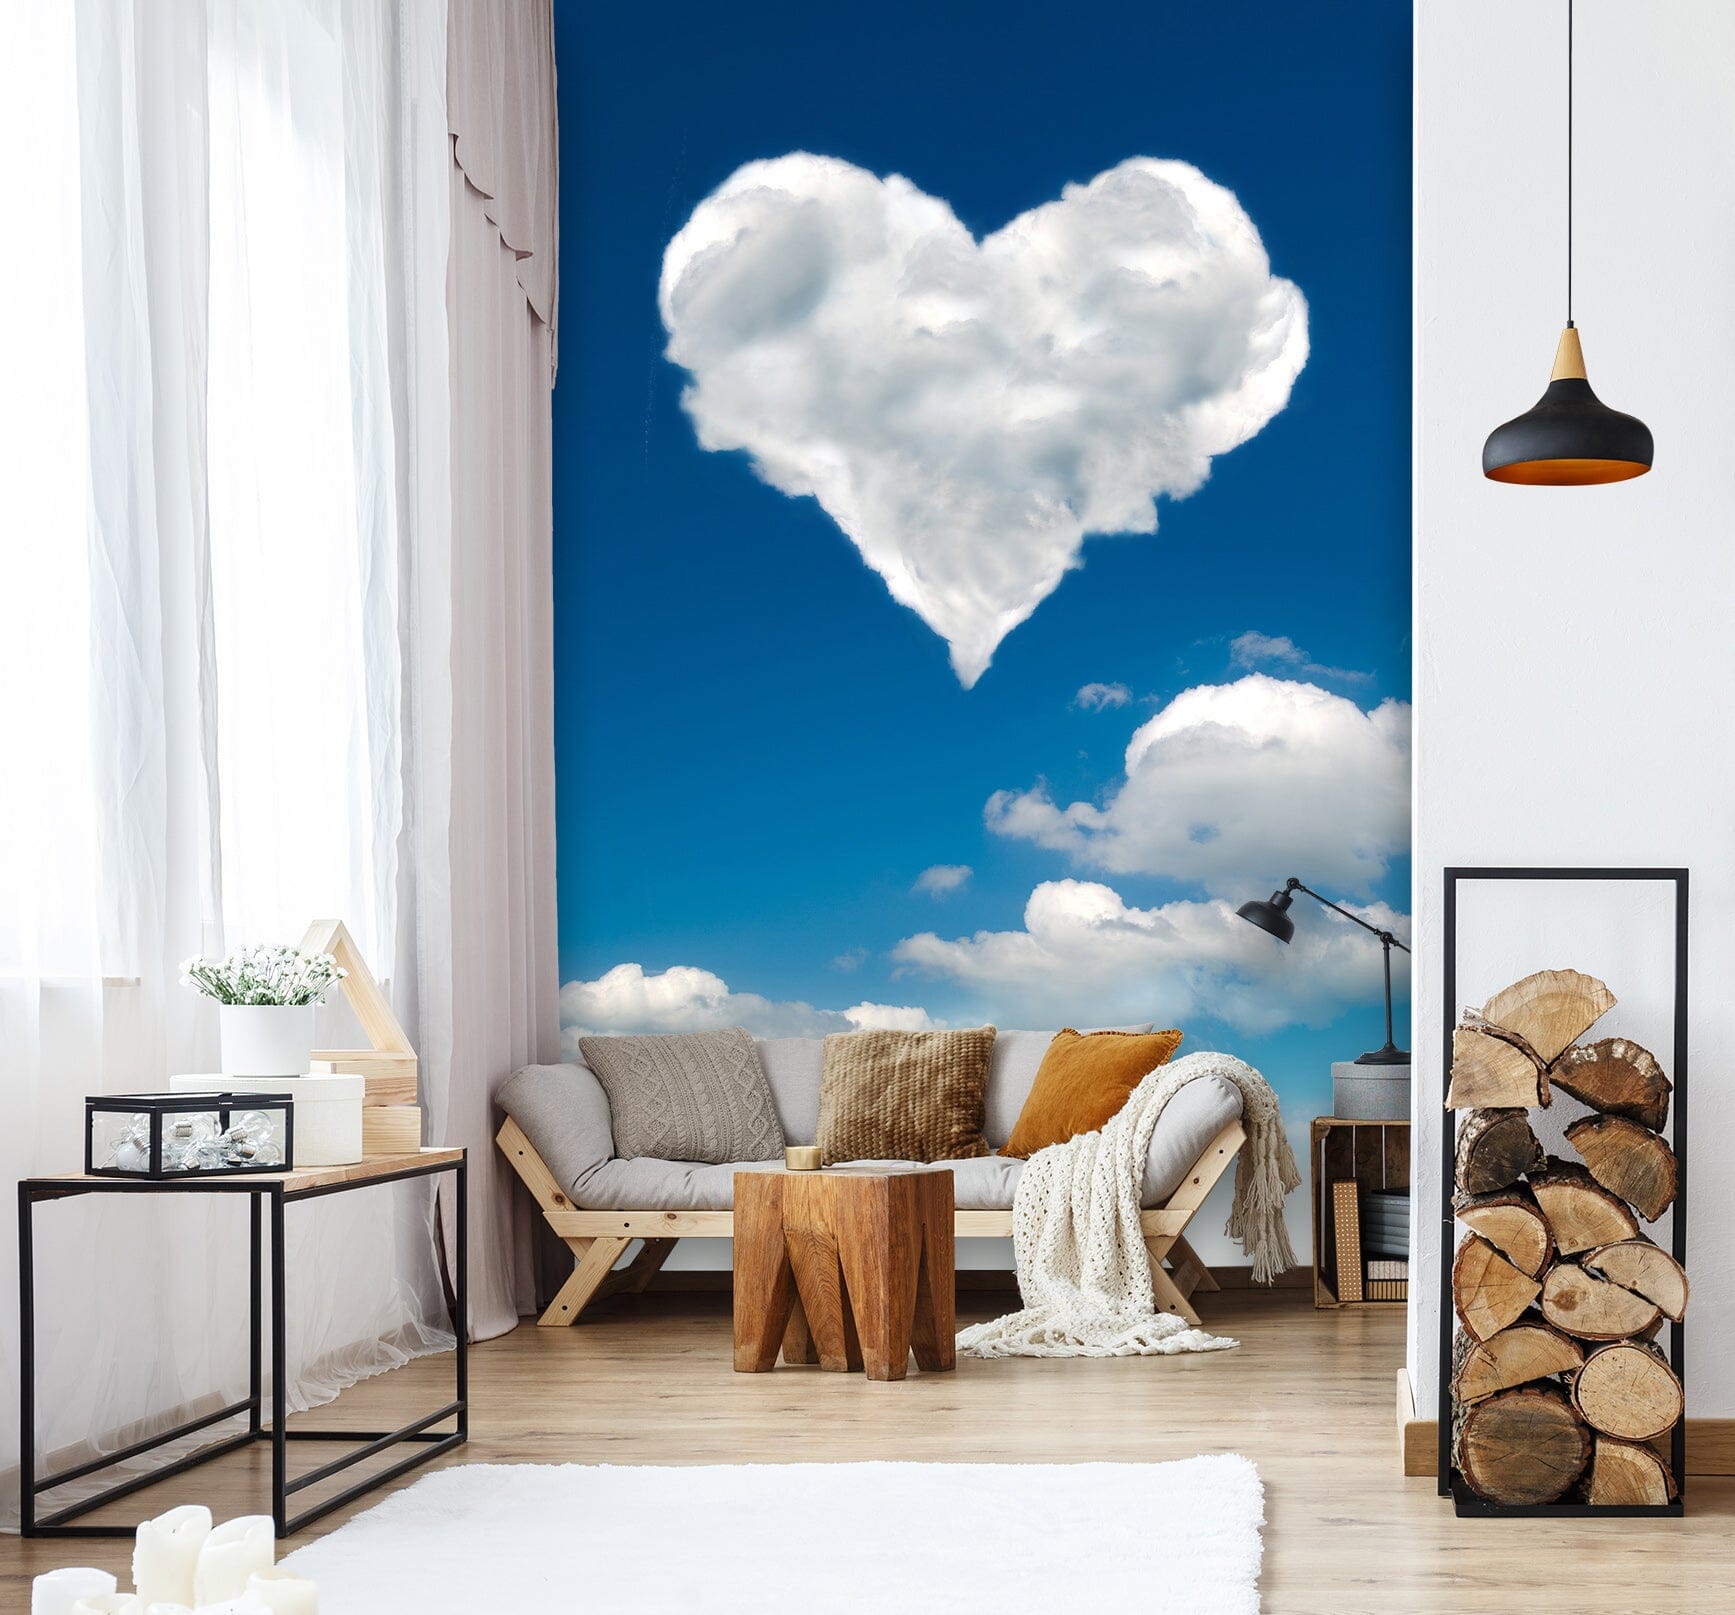 3D Love Cloud 1553 Wall Murals Wallpaper AJ Wallpaper 2 